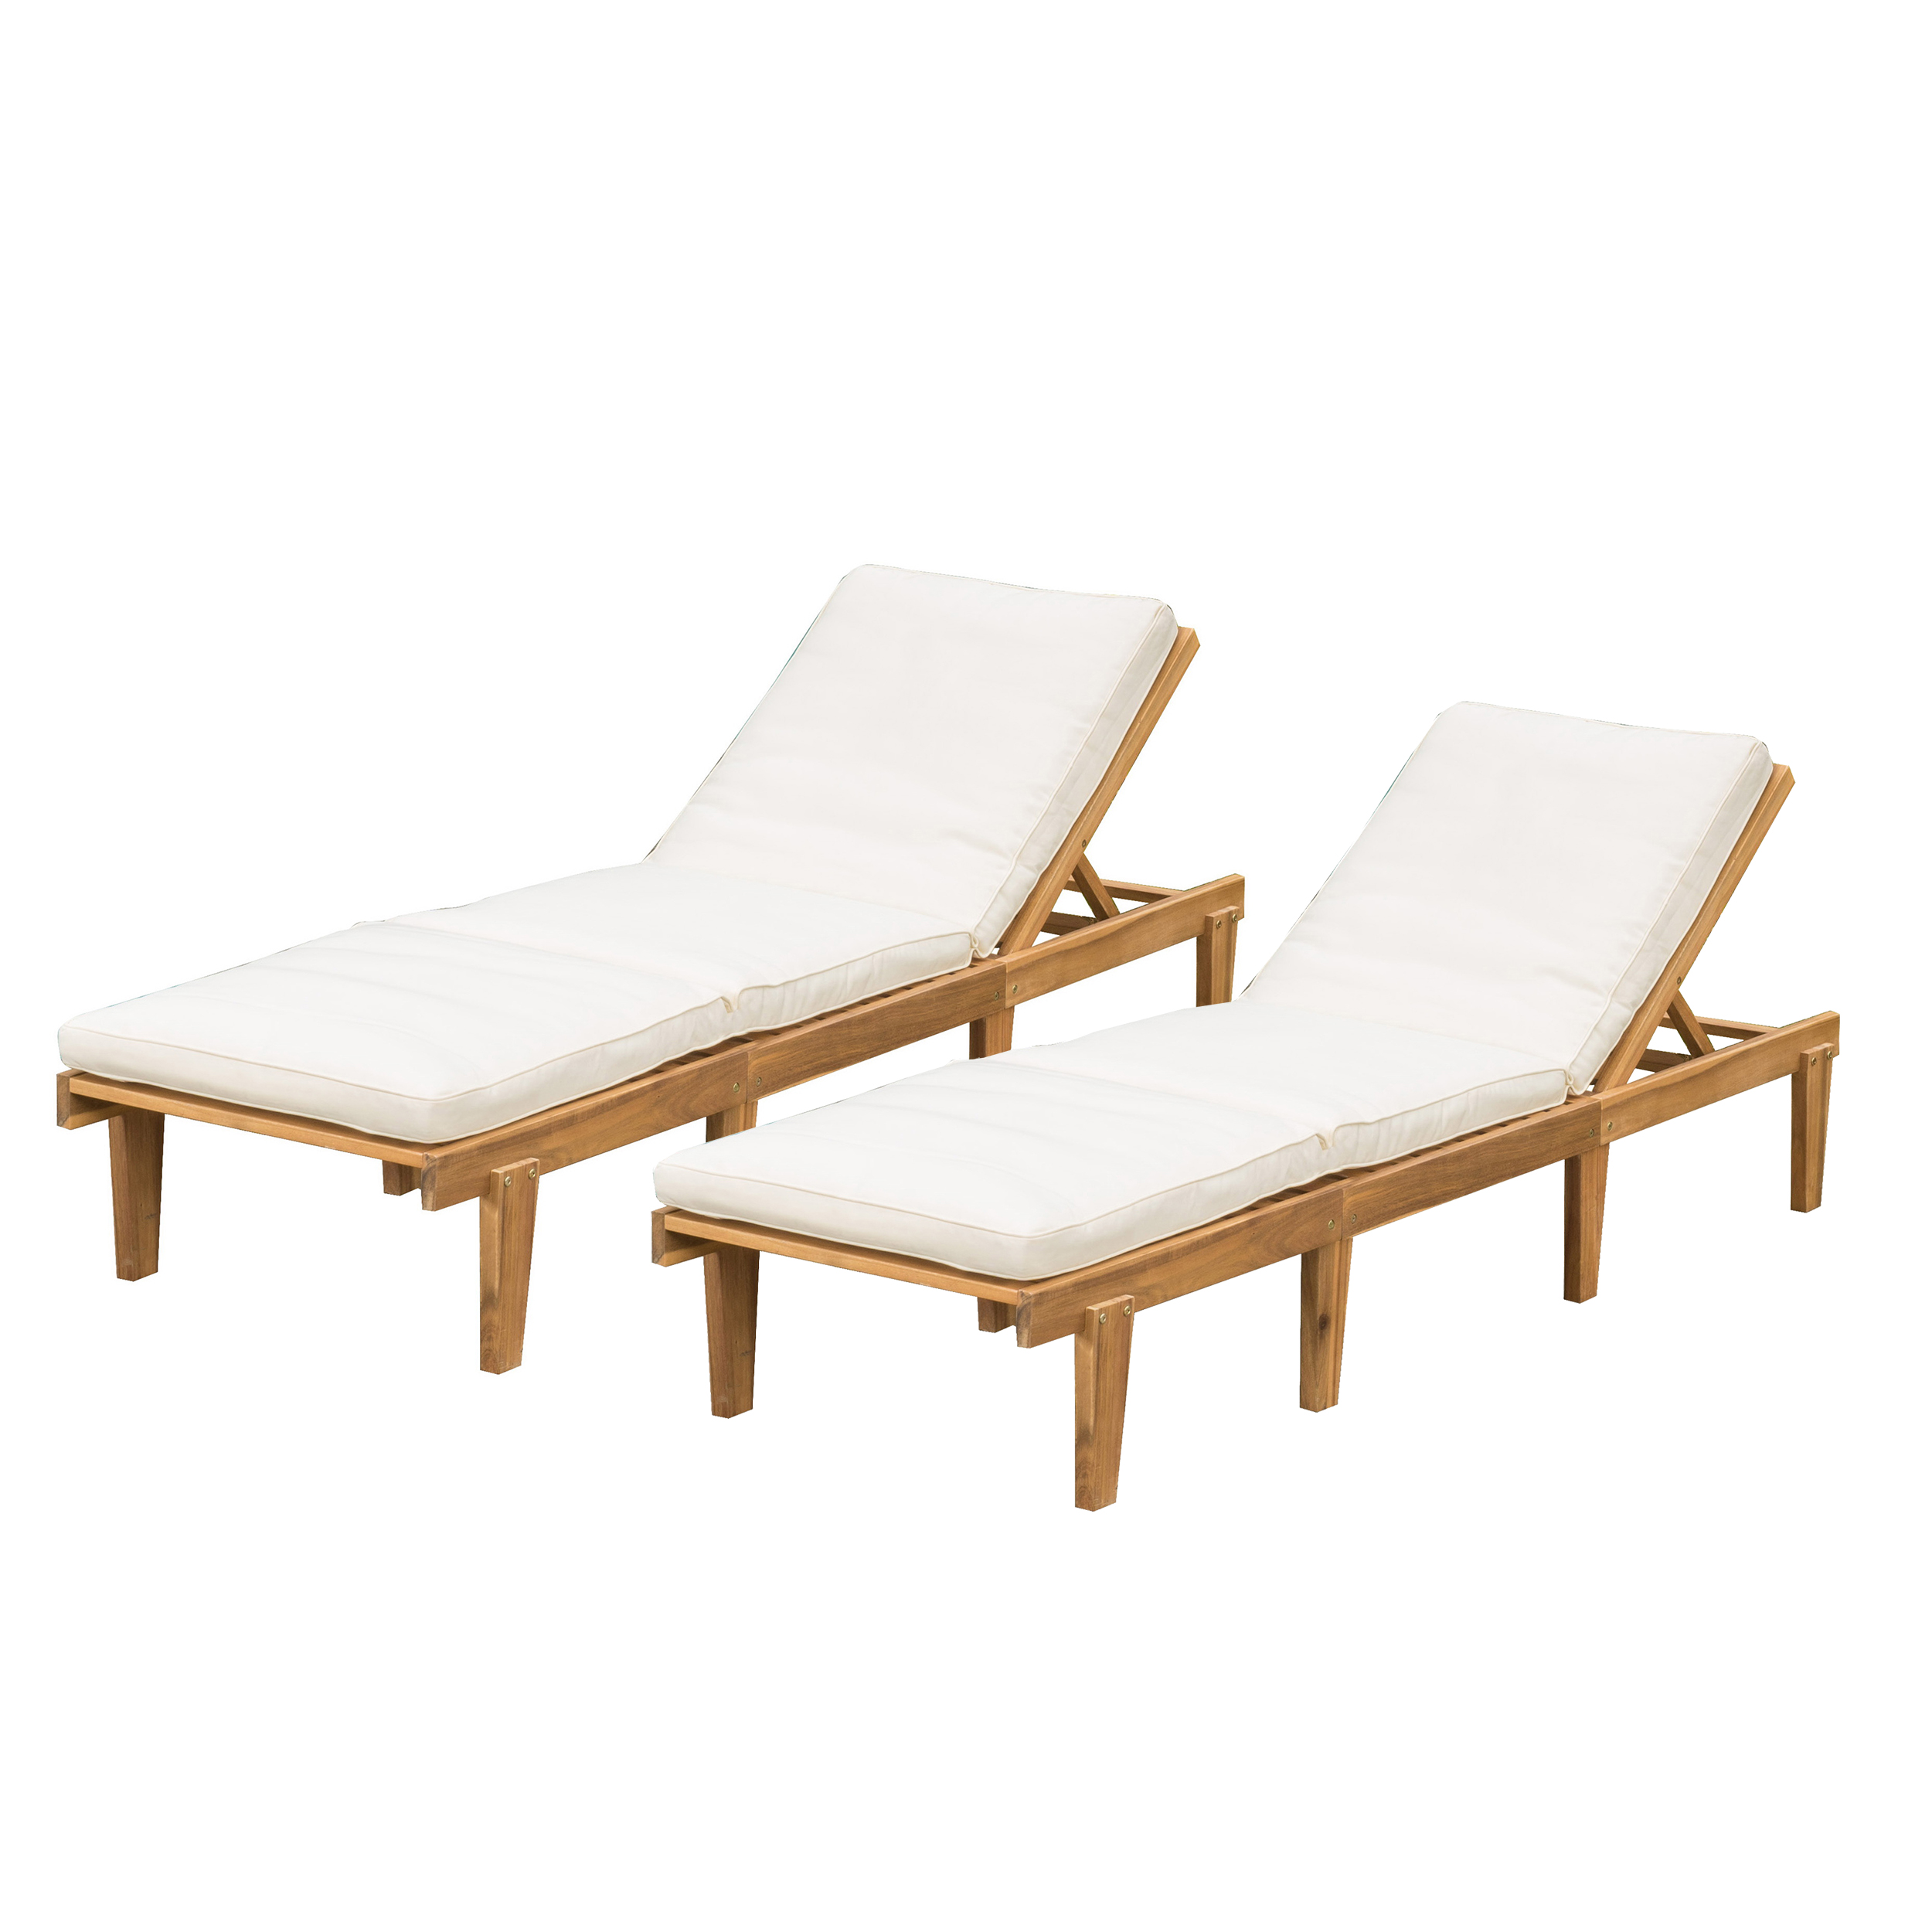 Teak Finish Acacia Wood Chaise Lounge With Cushion - image 1 of 8